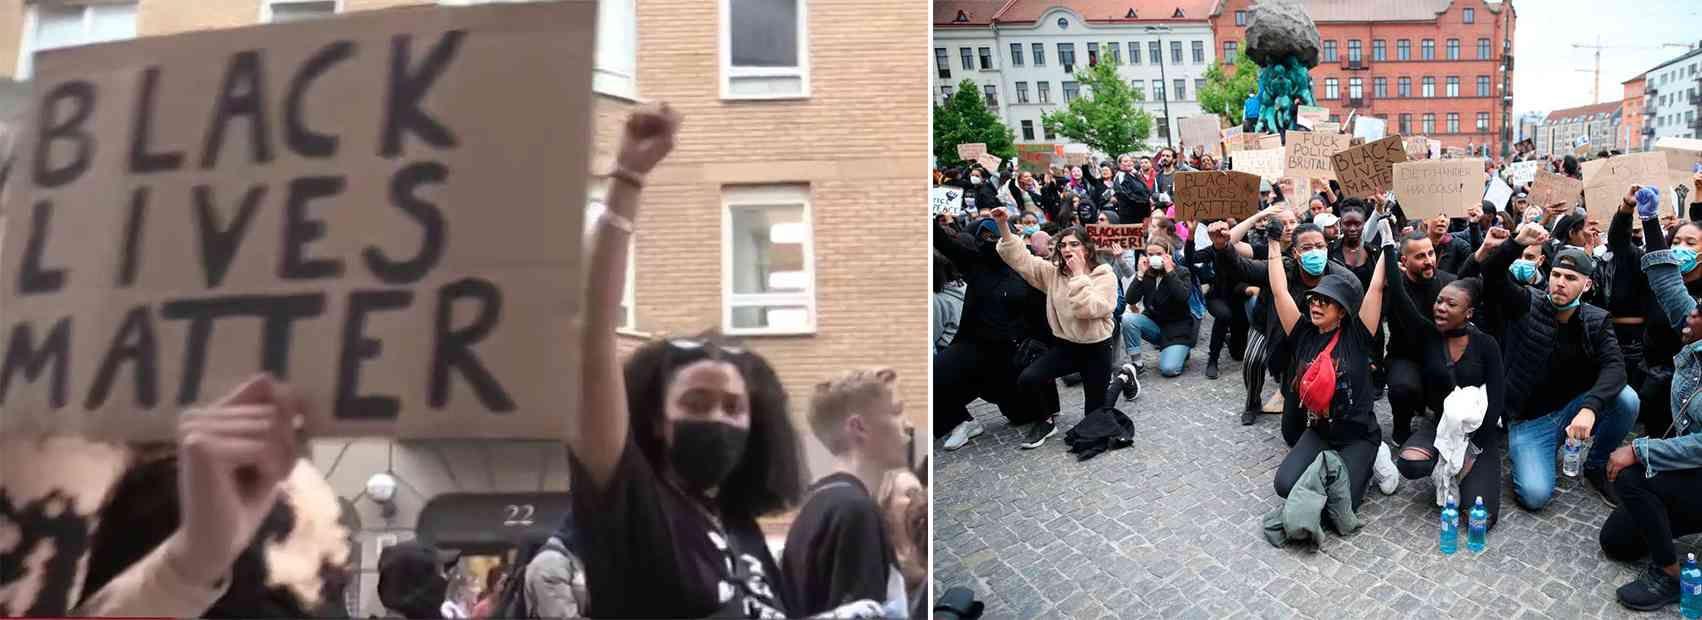 Tusentals tågade genom Malmö i protest mot rasismen tidigare i veckan. 